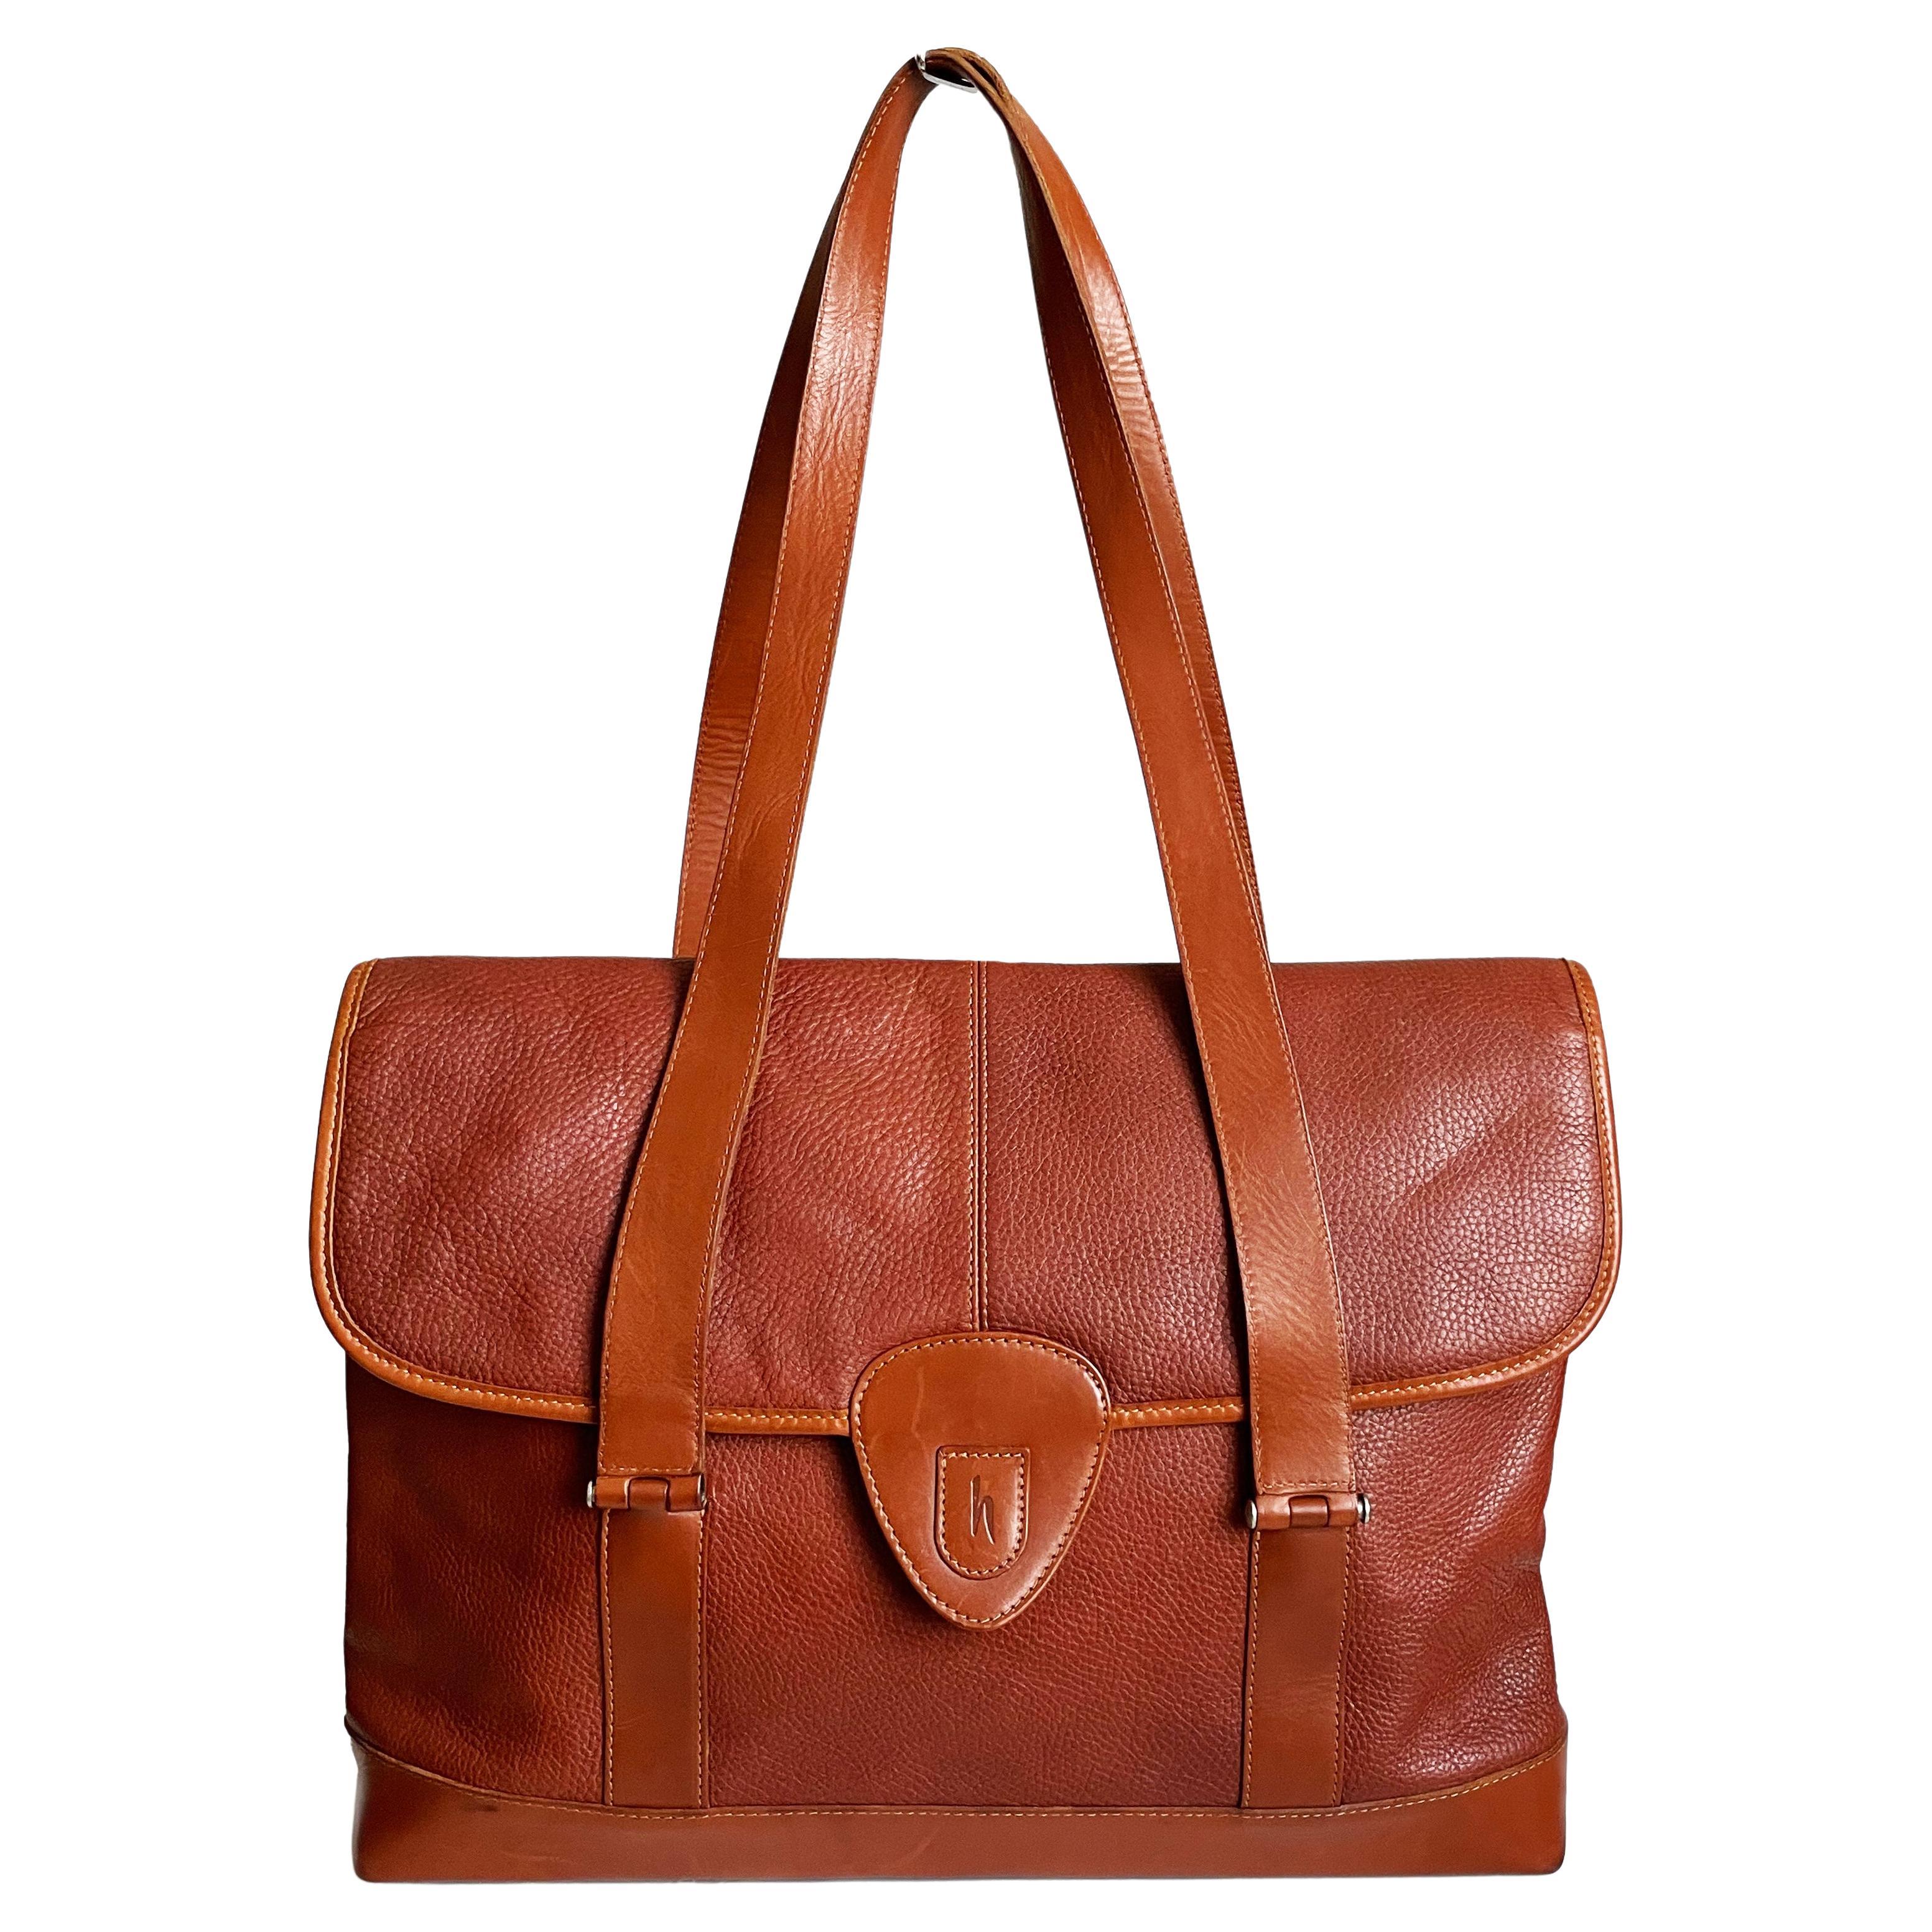 Hartmann Business Bag Briefcase Computer or Shoulder Bag British Tan Leather